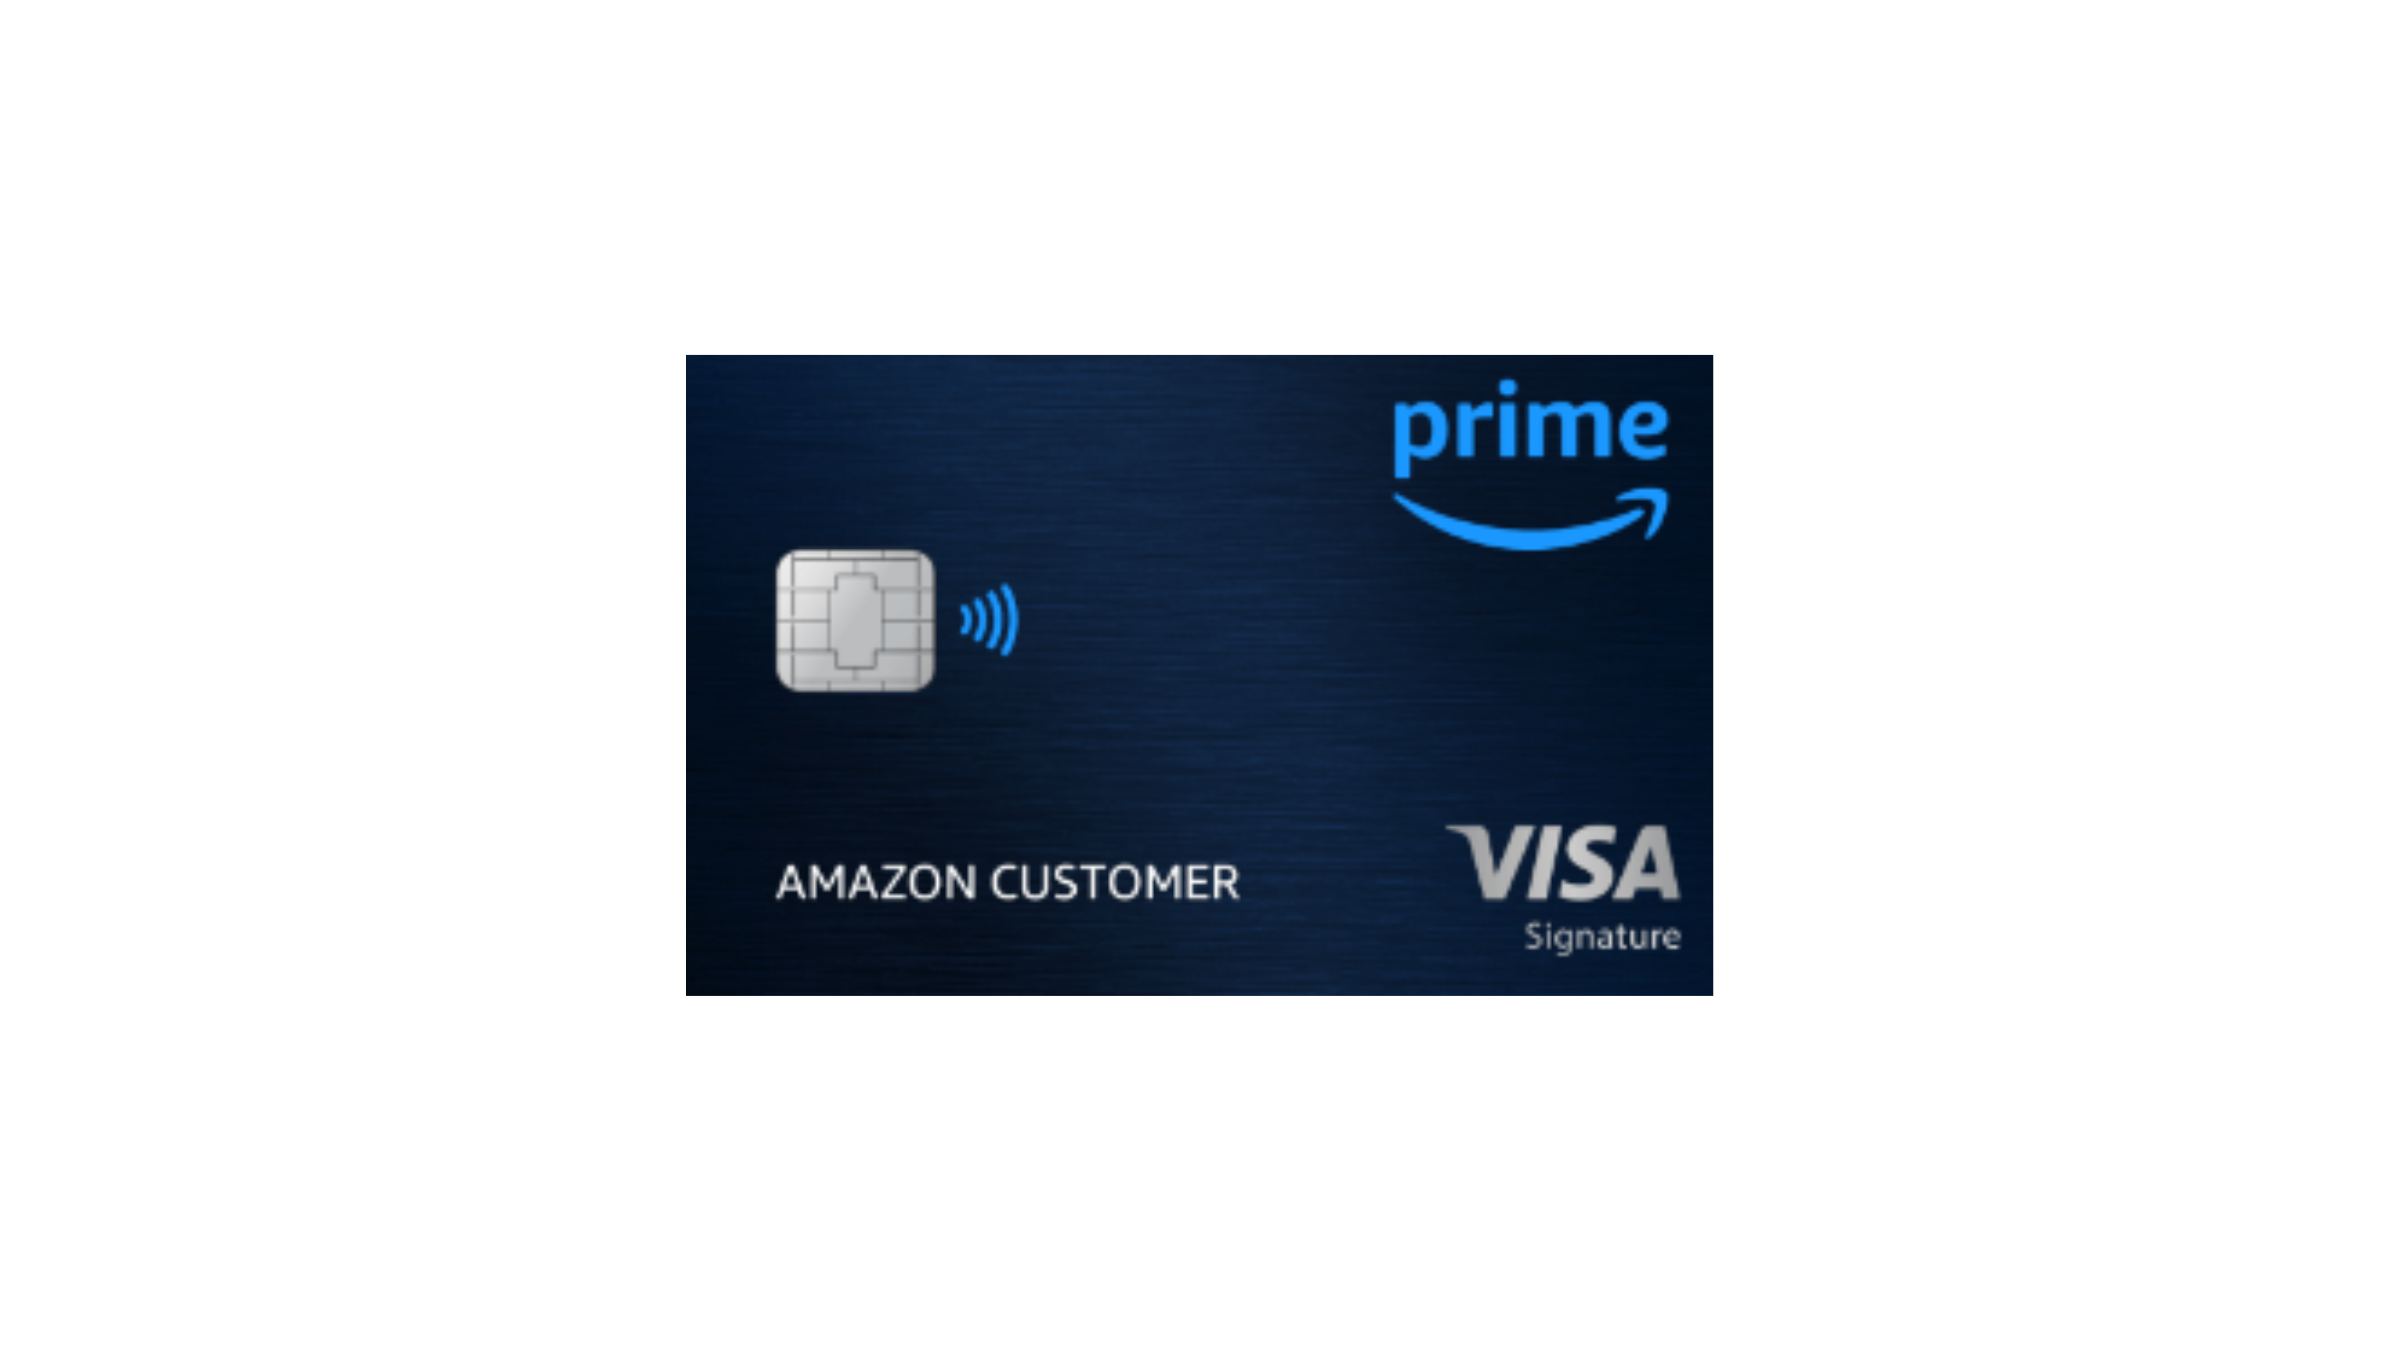 Amazon Rewards Visa Signature Card